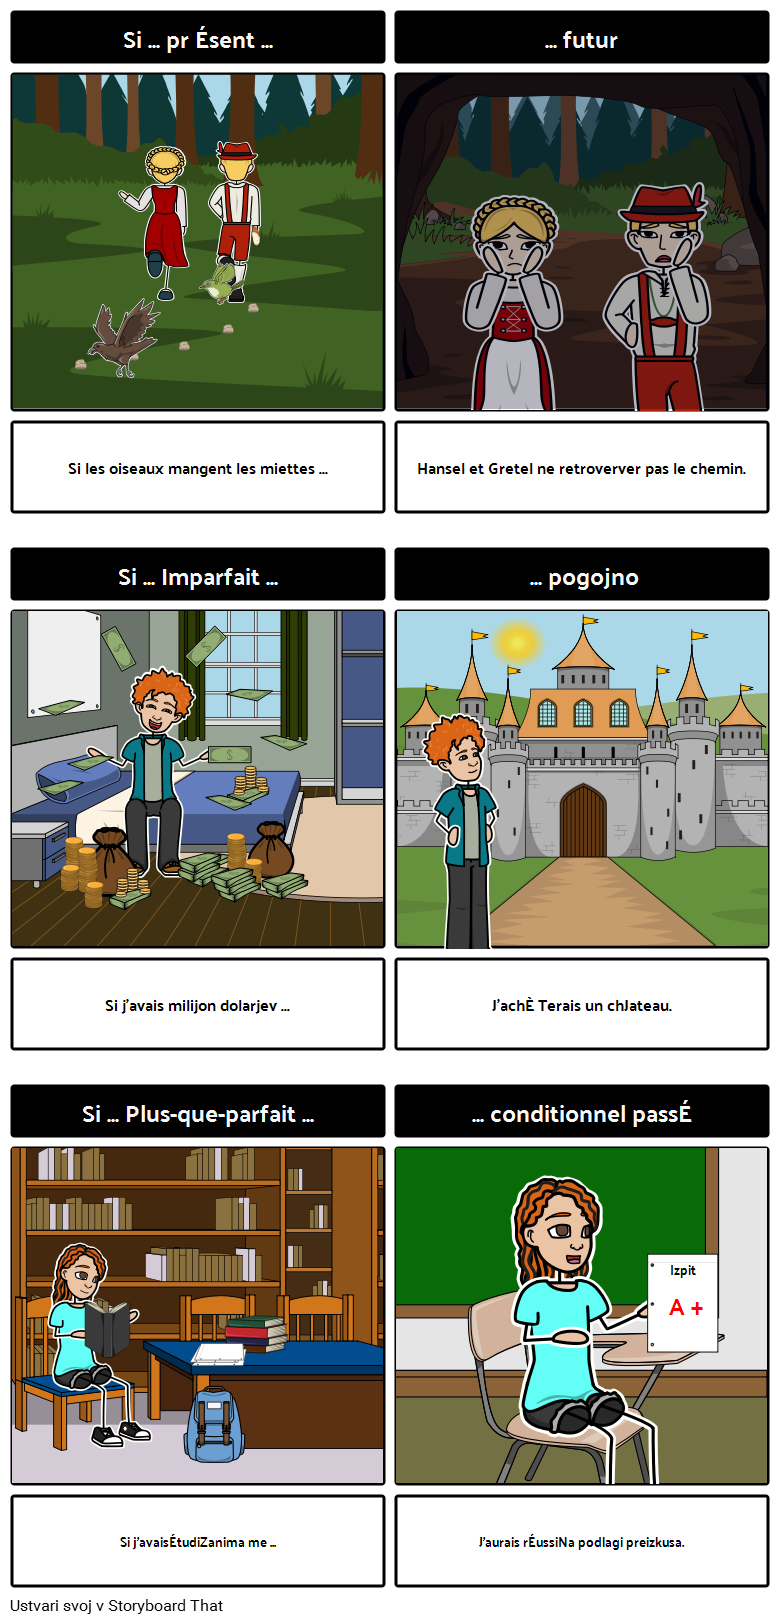 Konstrukcije "Si" v francoščini